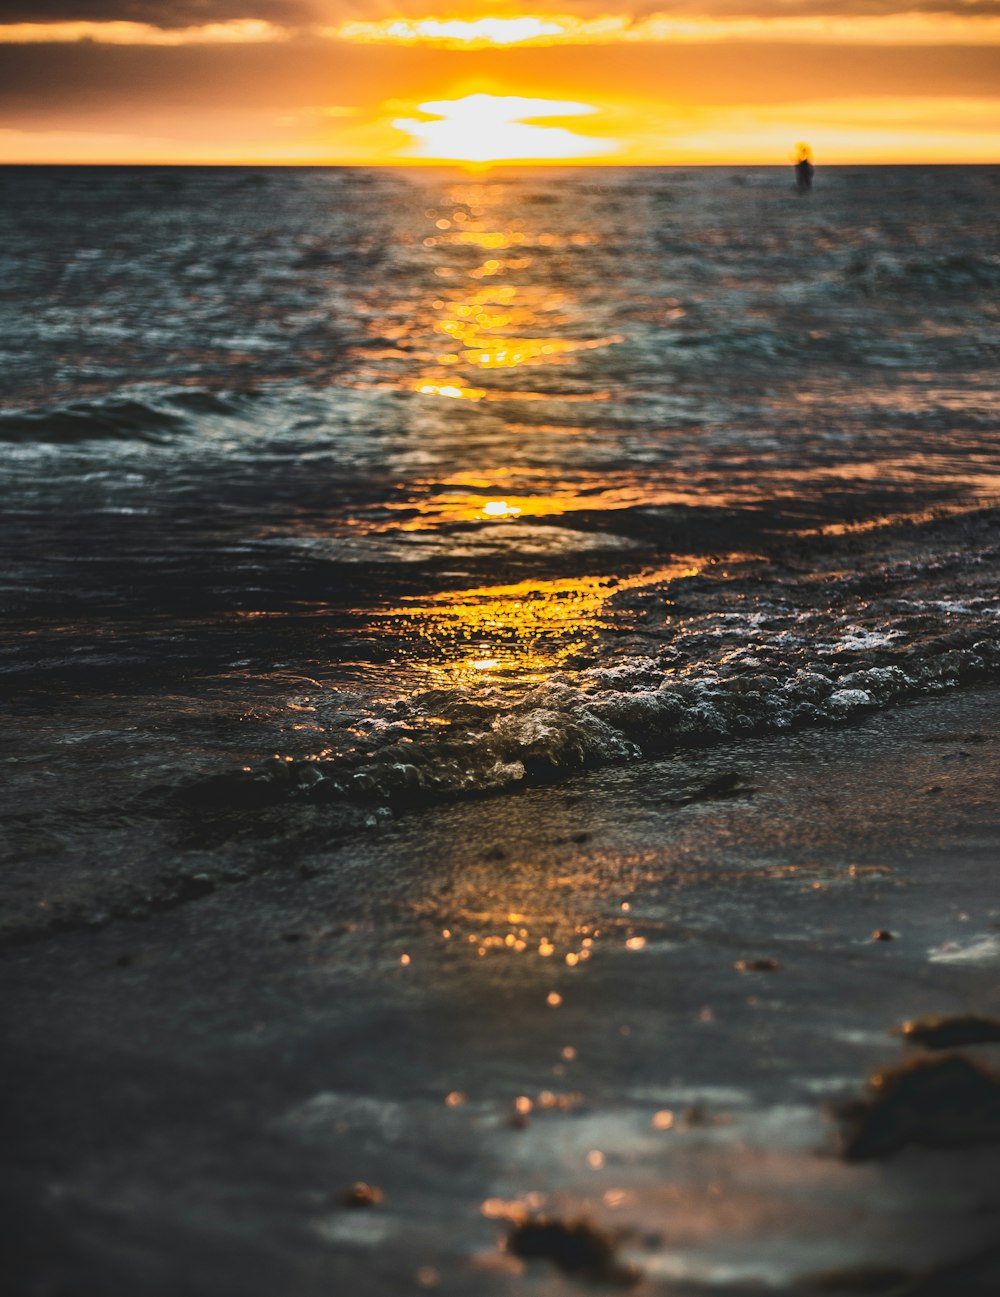 seashore during golden hour